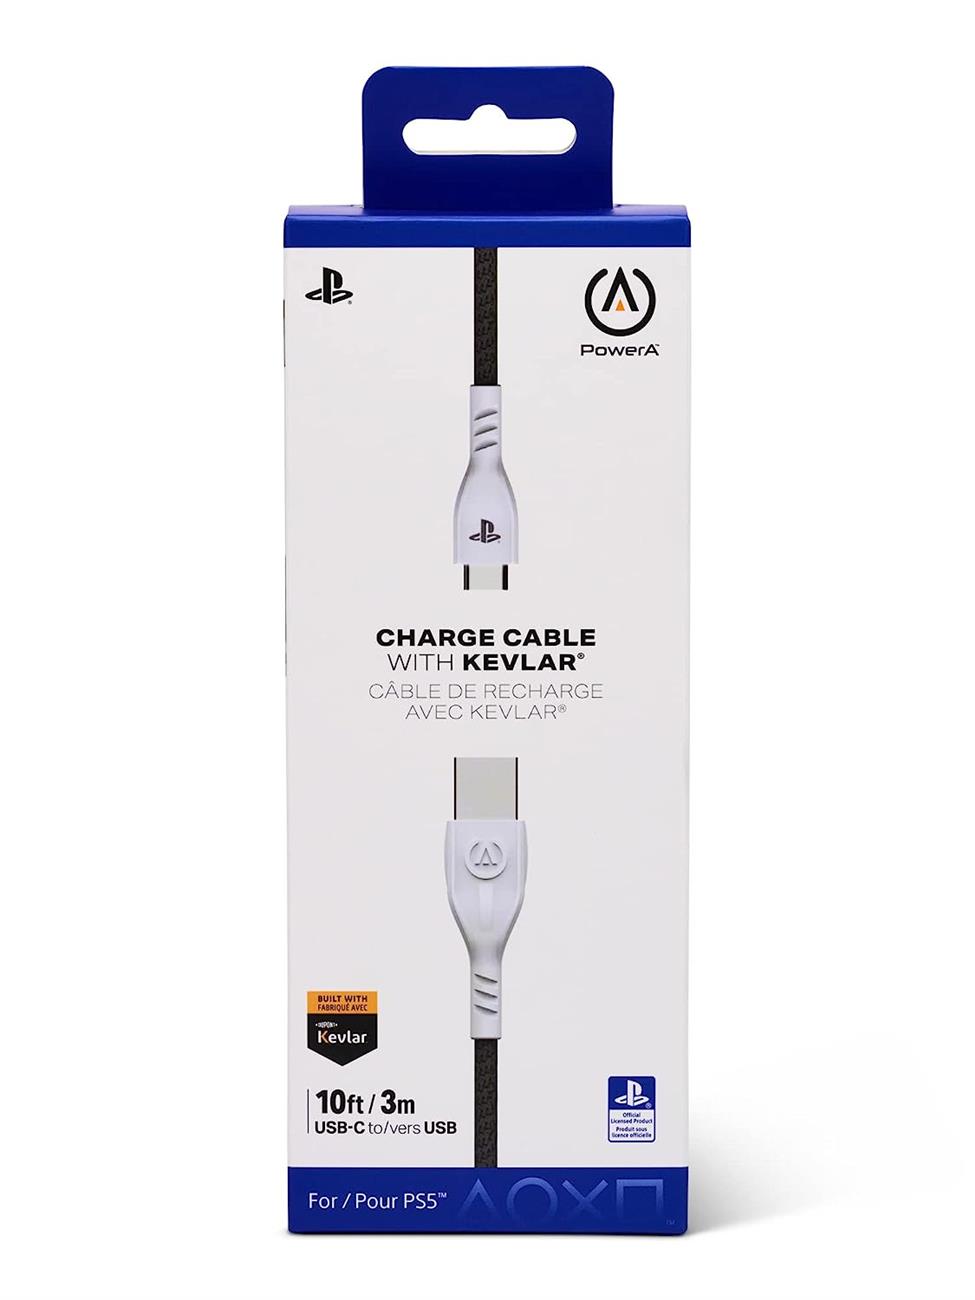 PowerA cable de carga con kevlar y mallado USB-C para PS5